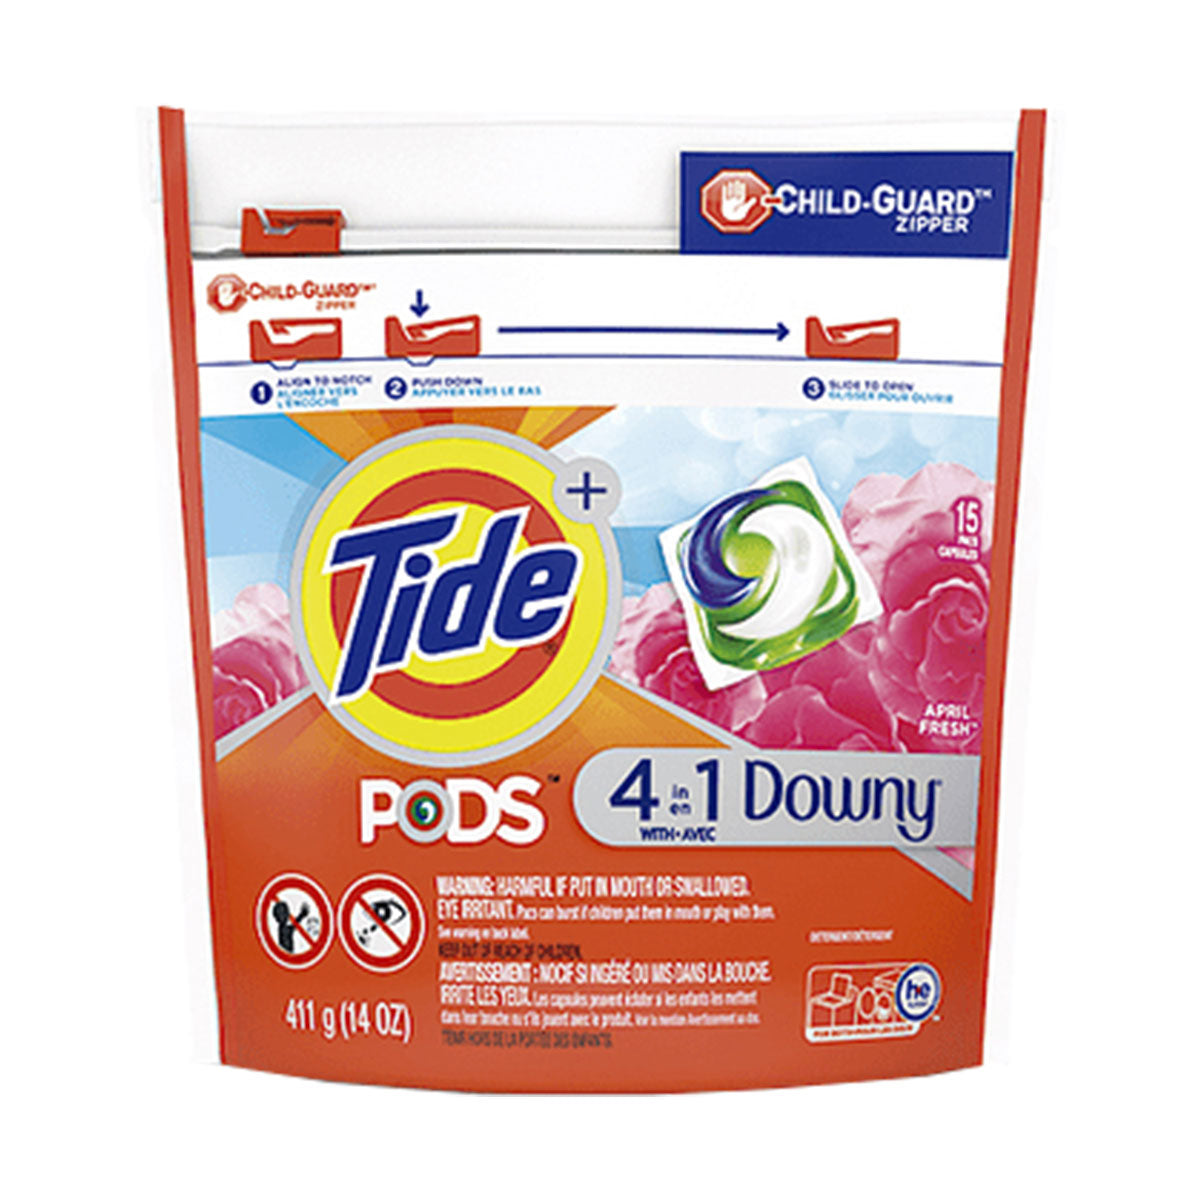 Detergente para ropa en cápsulas Tide PODS con Downy (15 cápsulas)